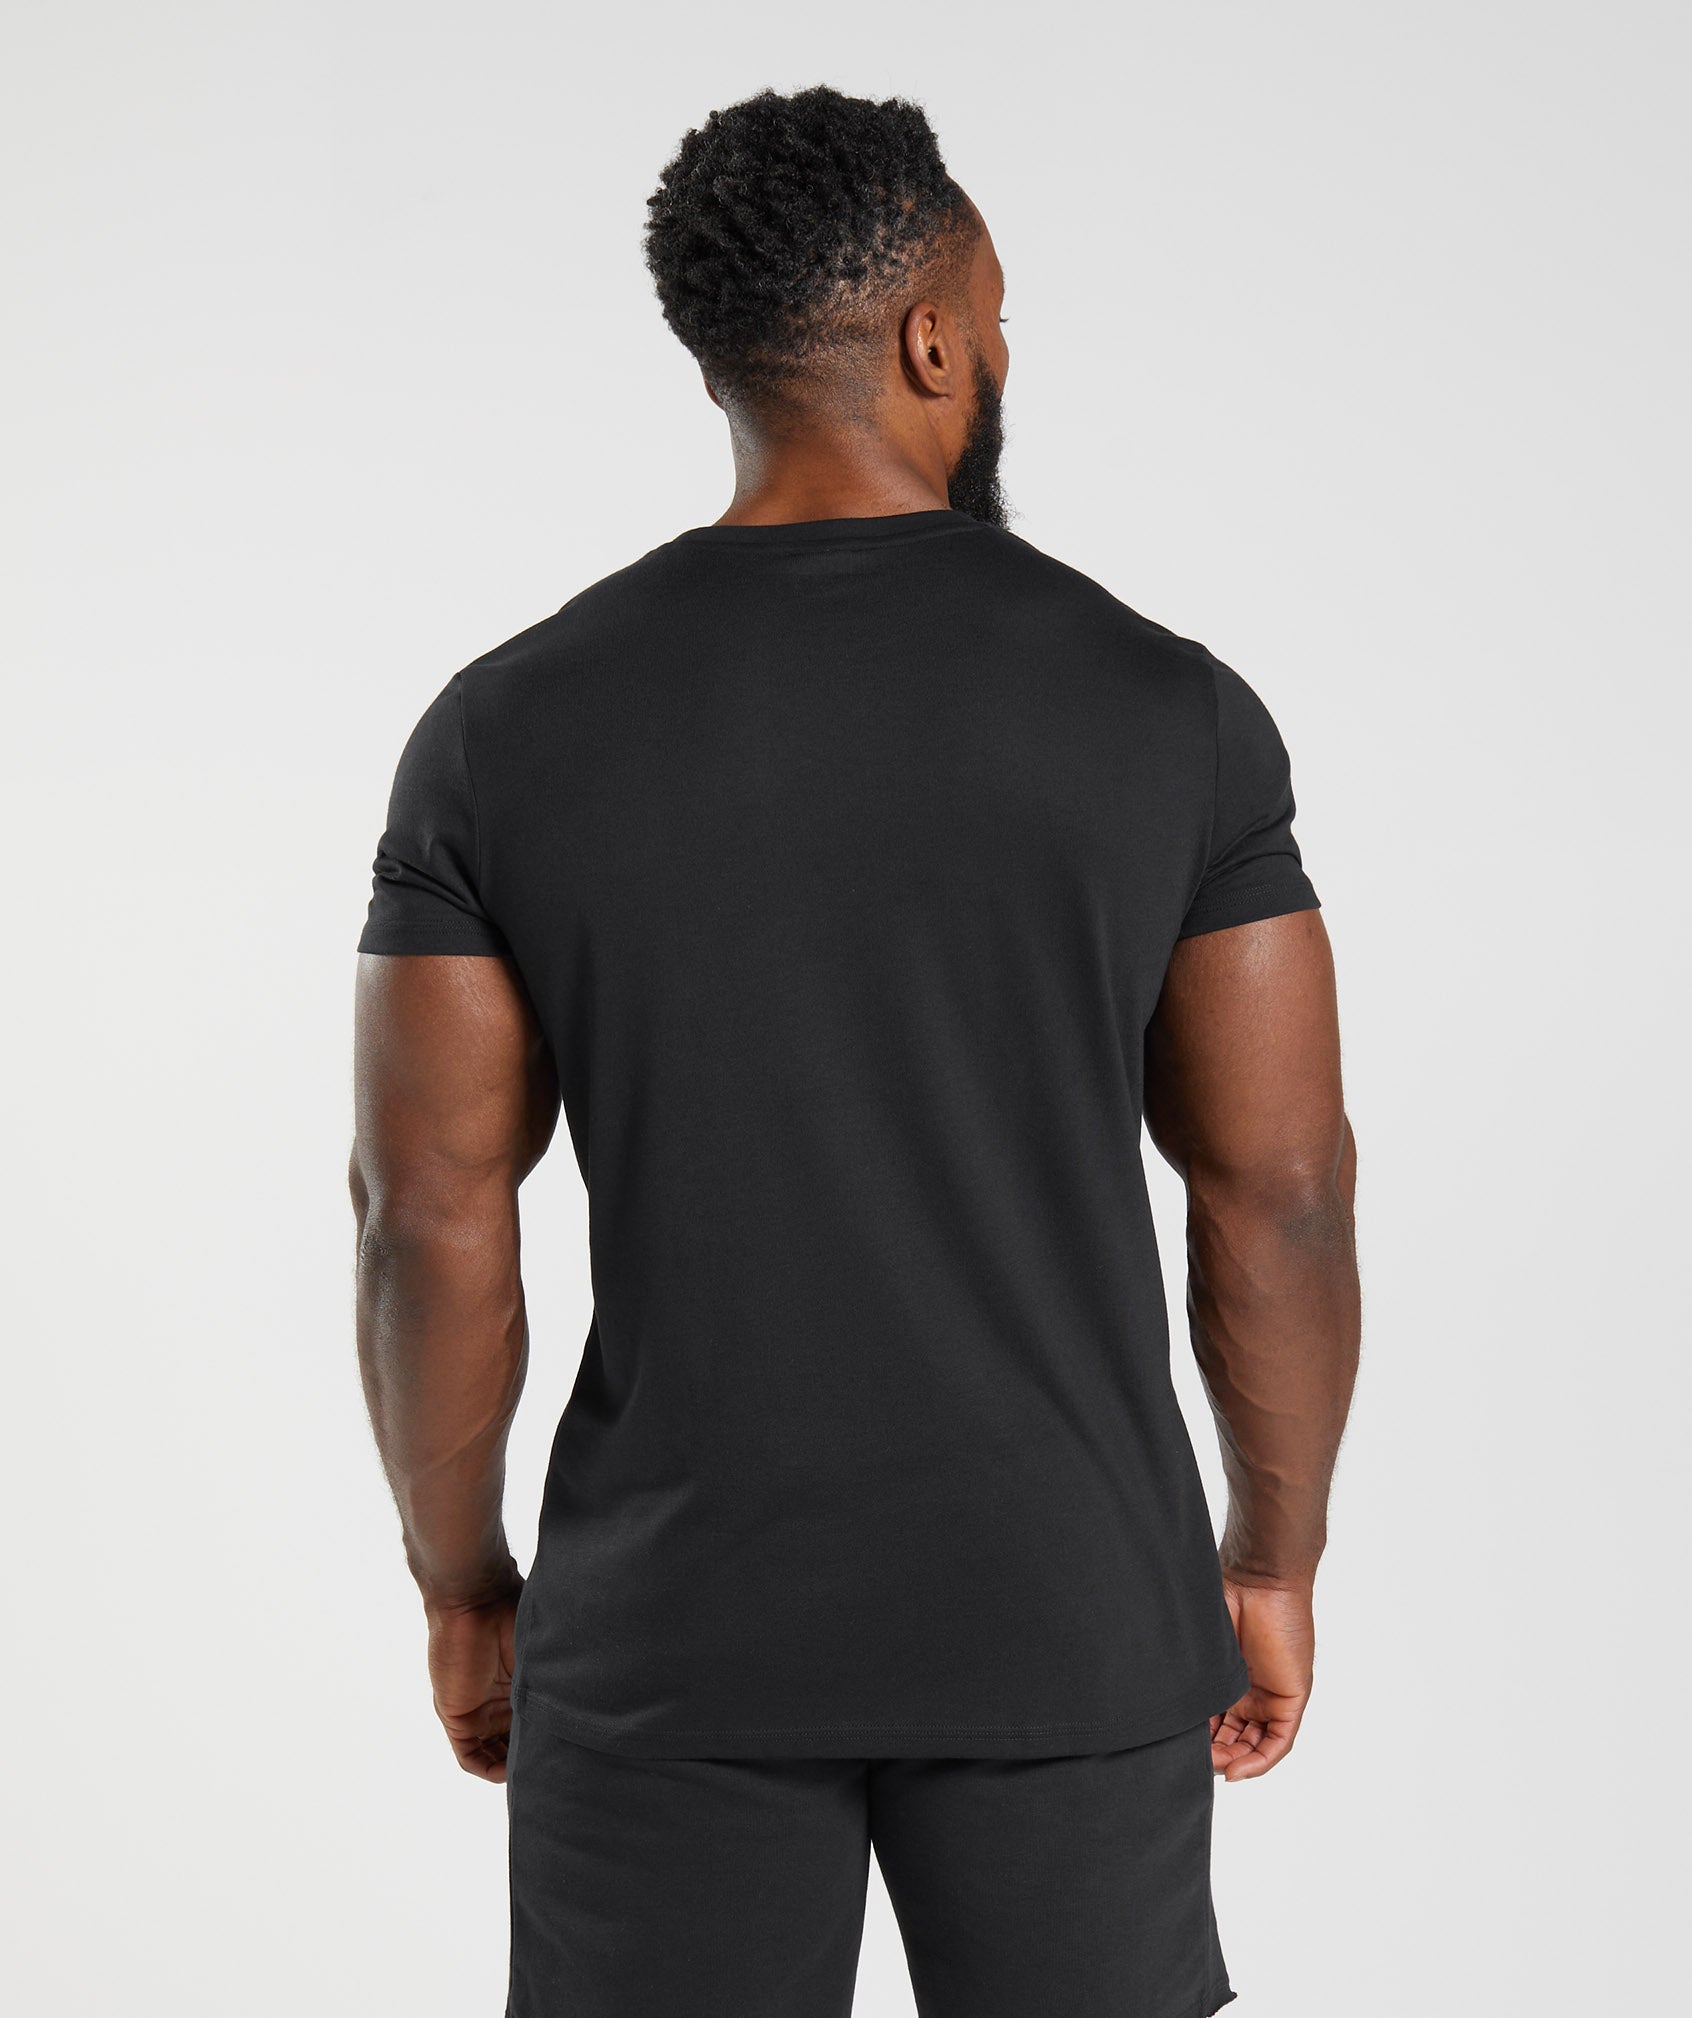 Gymshark Legacy T-Shirt - Black  T shirt black, Shirts, School